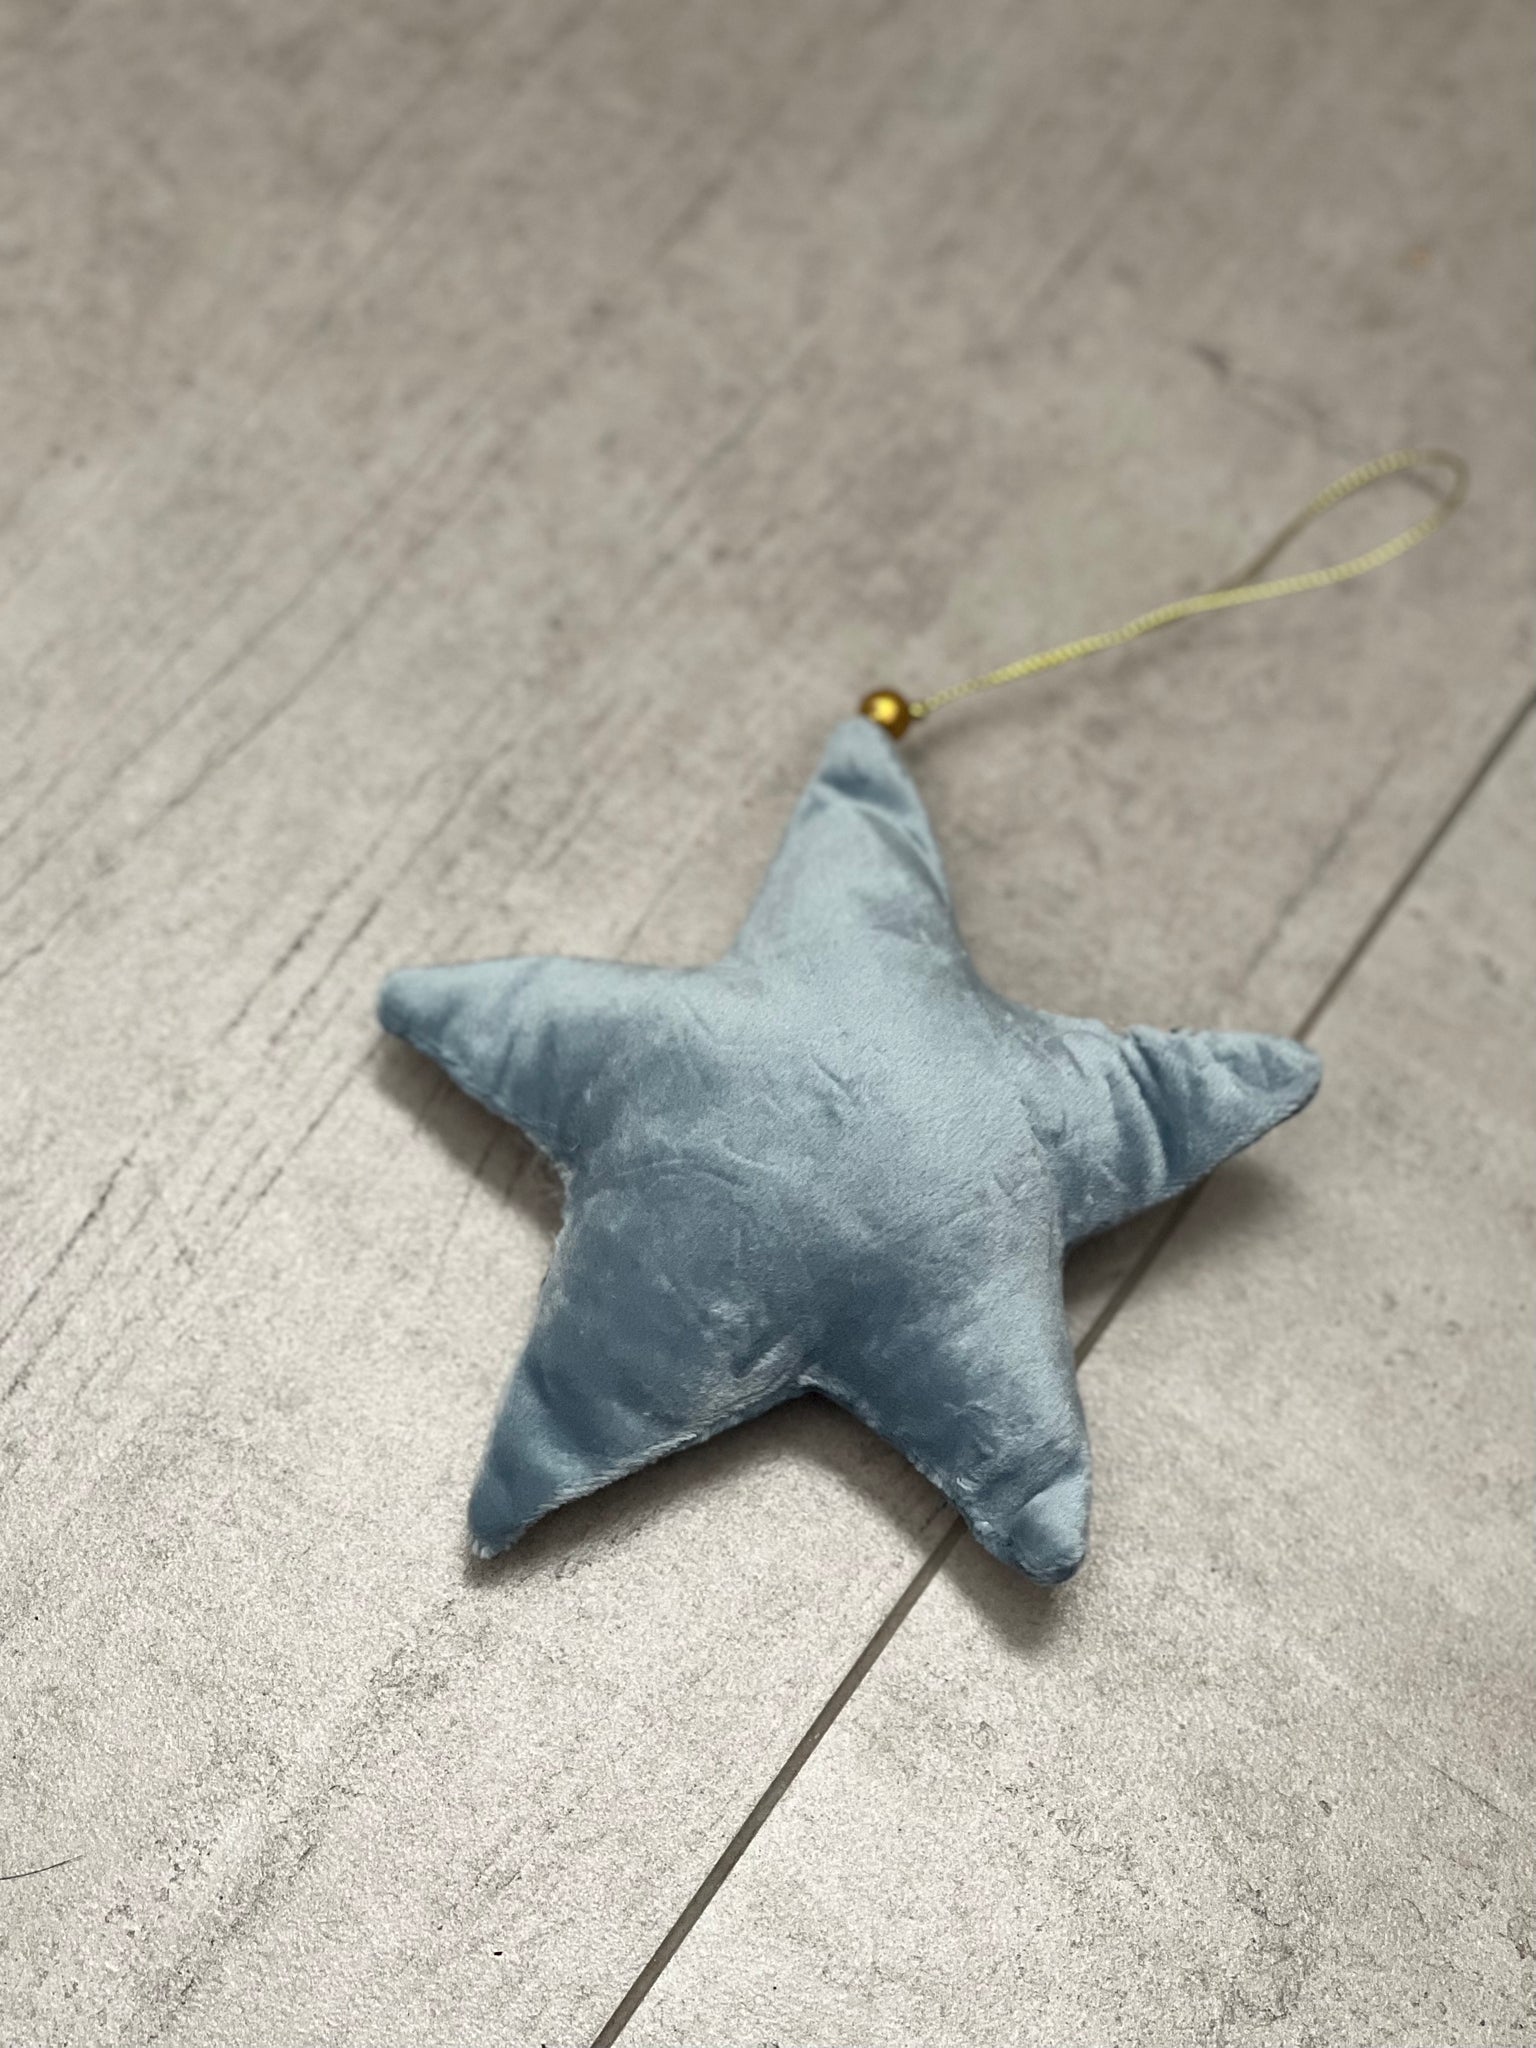 Personalised velvet star ornament